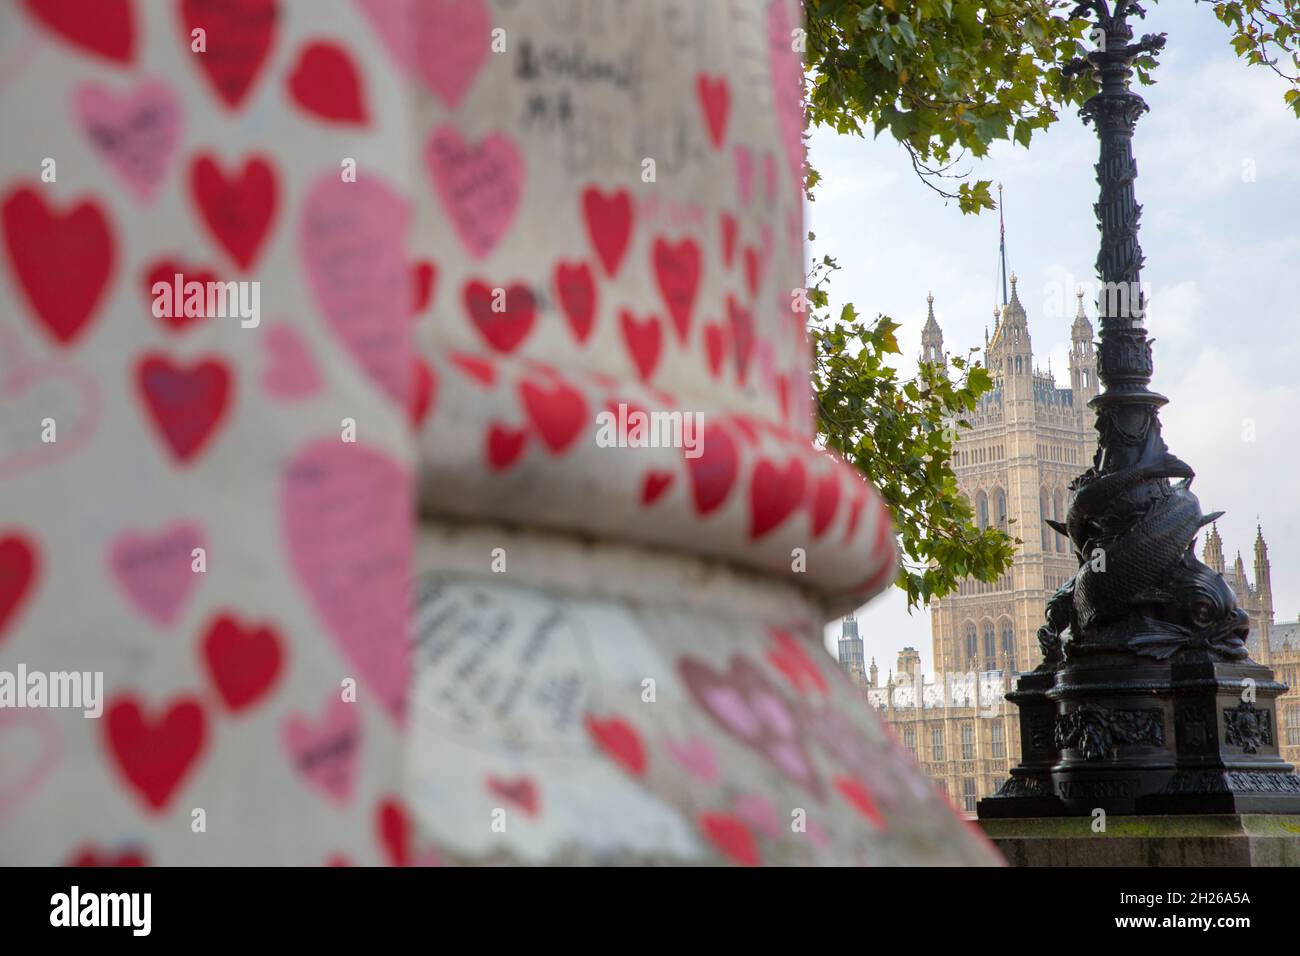 Le Palais de Westminster, le Parlement, est vu derrière le mur national du Covid, dans le centre de Londres, le samedi 16 octobre 2021. Banque D'Images